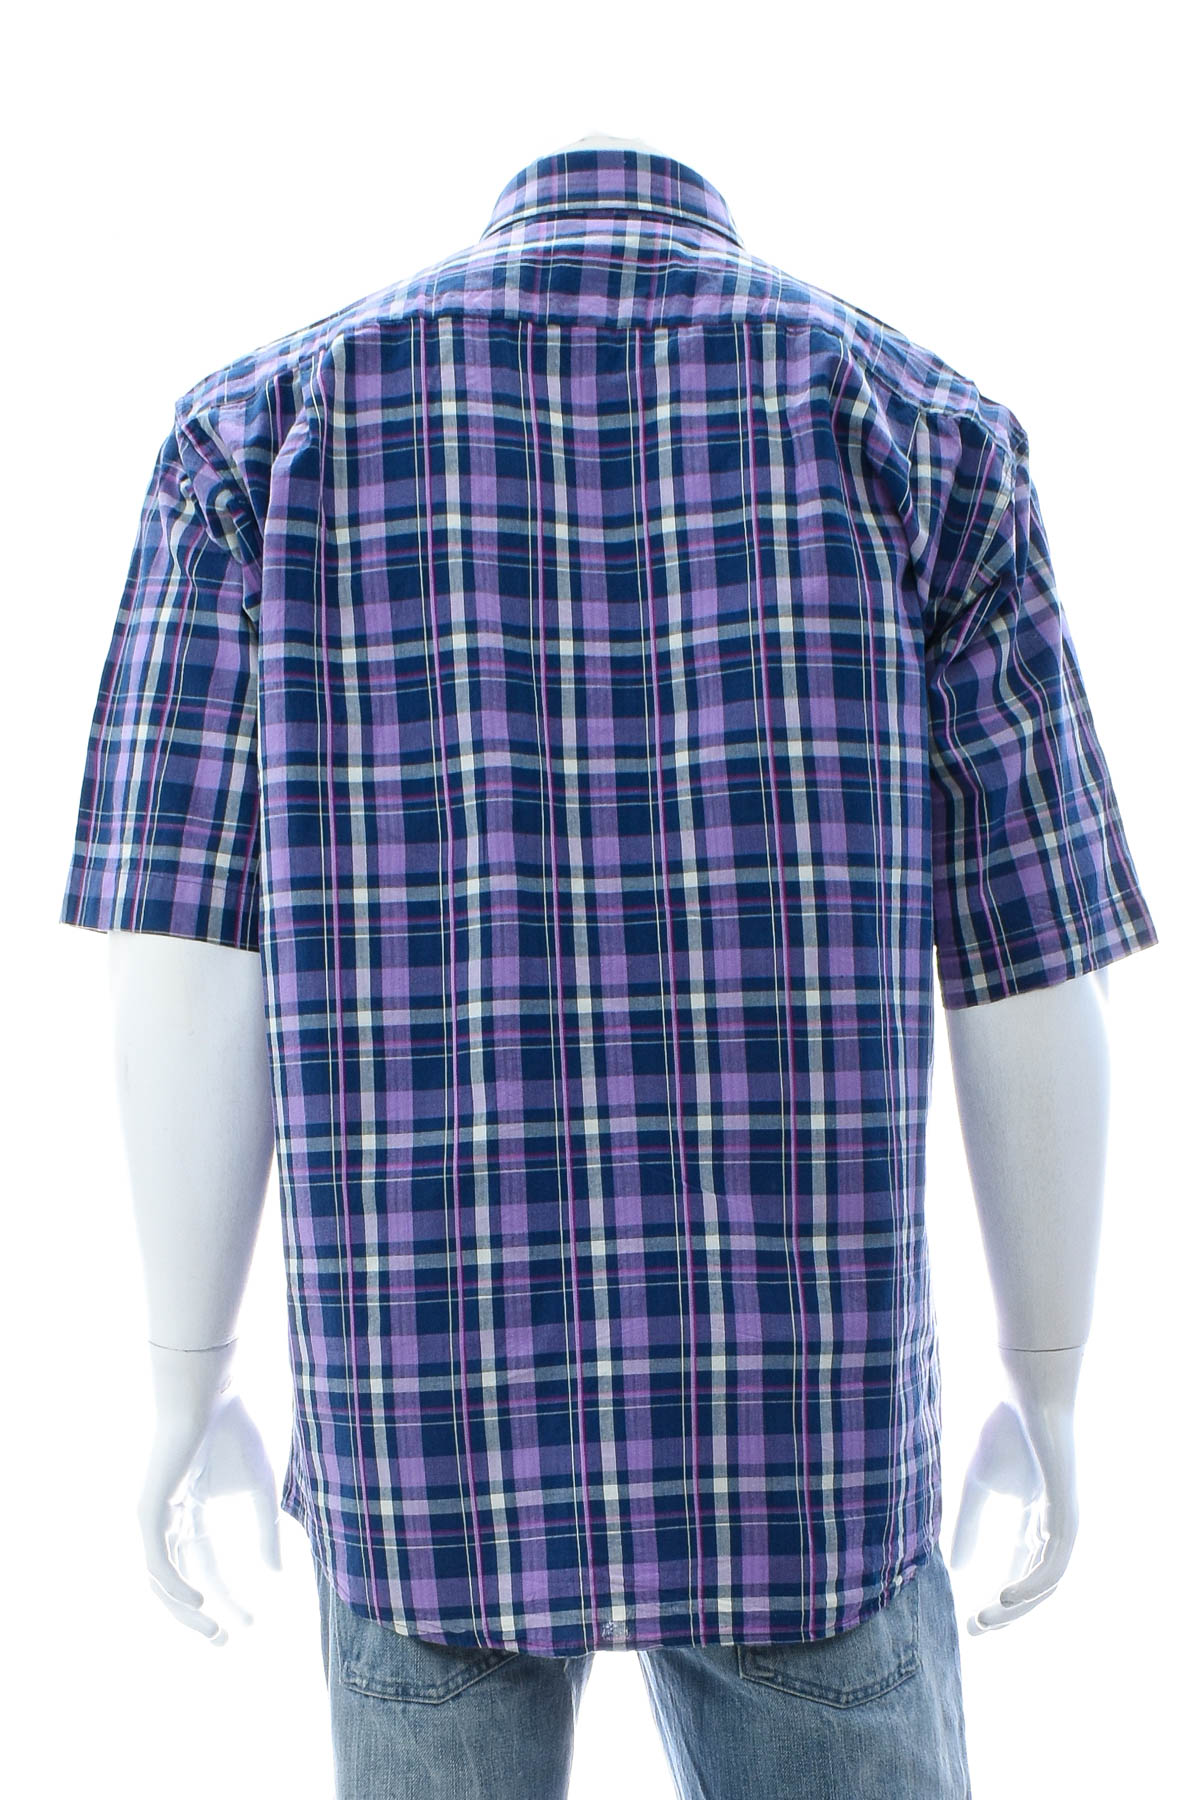 Ανδρικό πουκάμισο - Teodor - 1